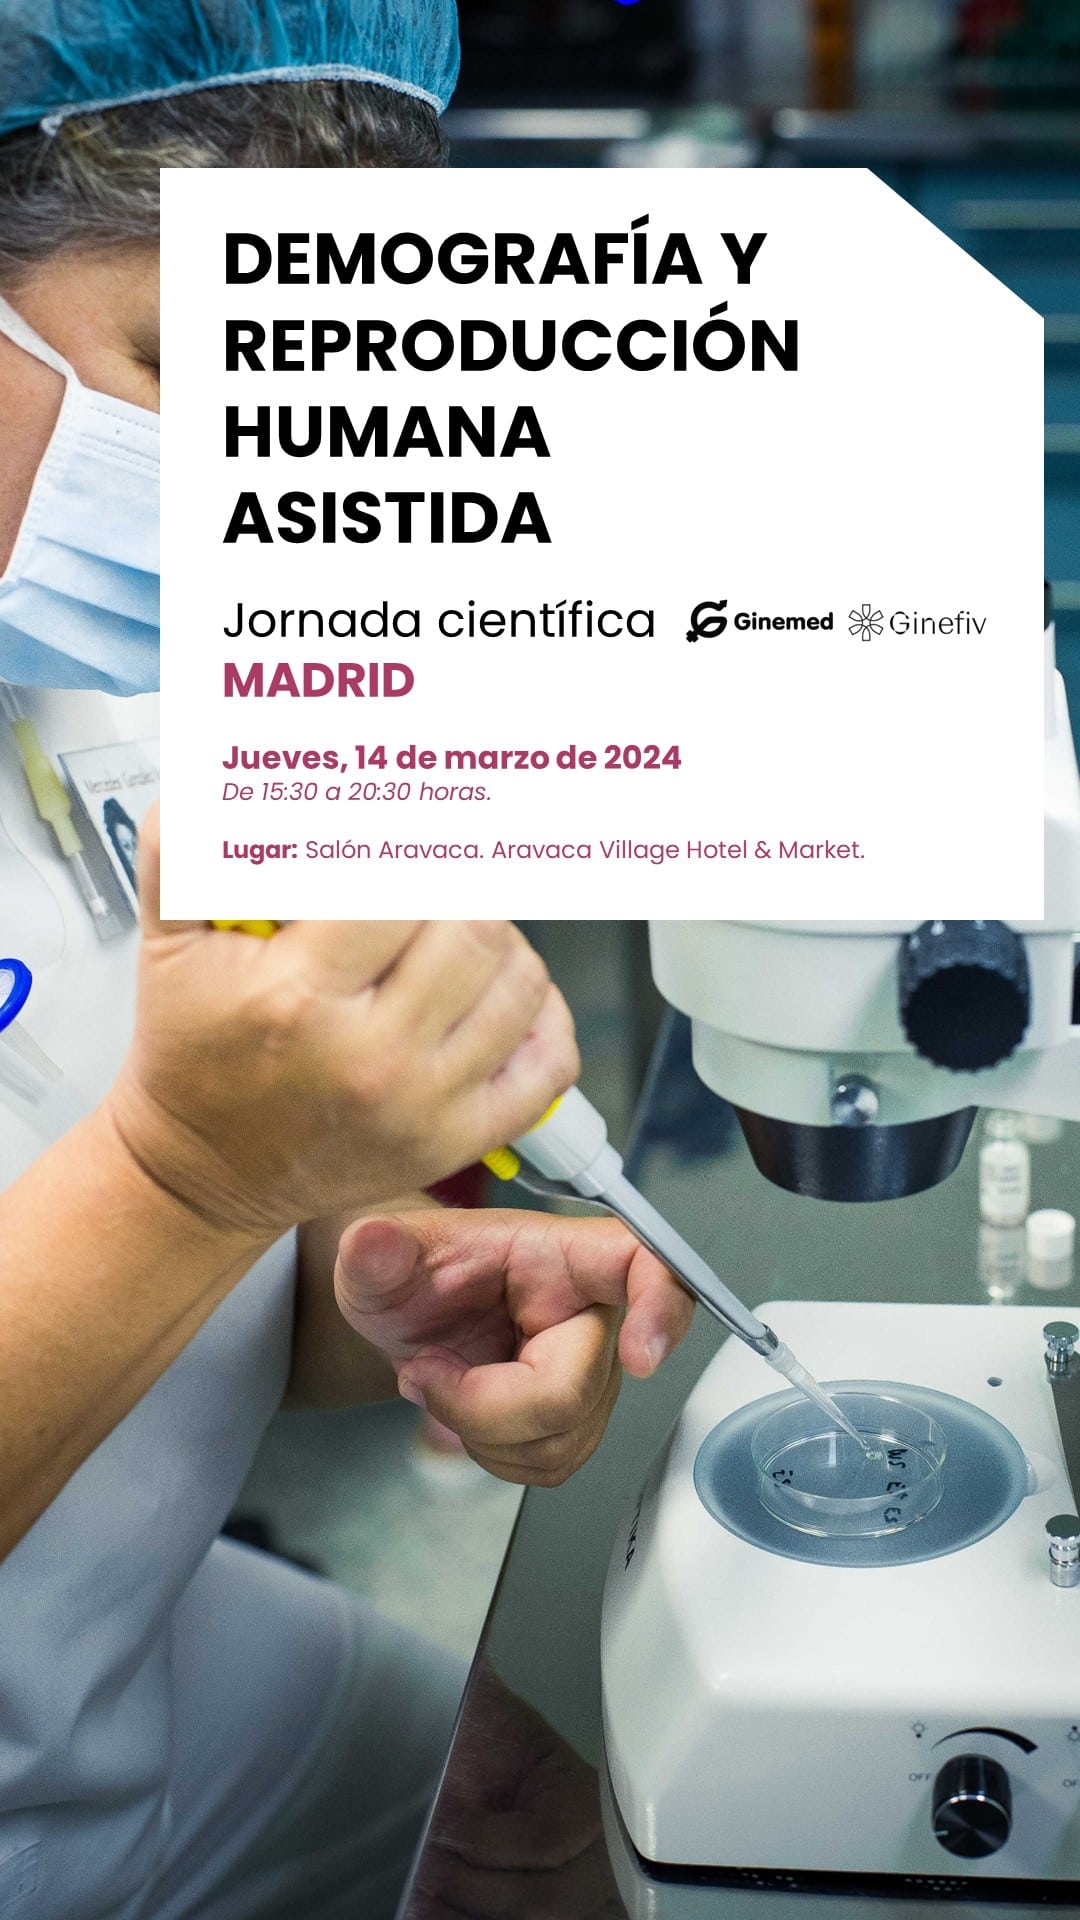 Jornadas científicas sobre Demografía y Reproducción Humana Asistida en Madrid